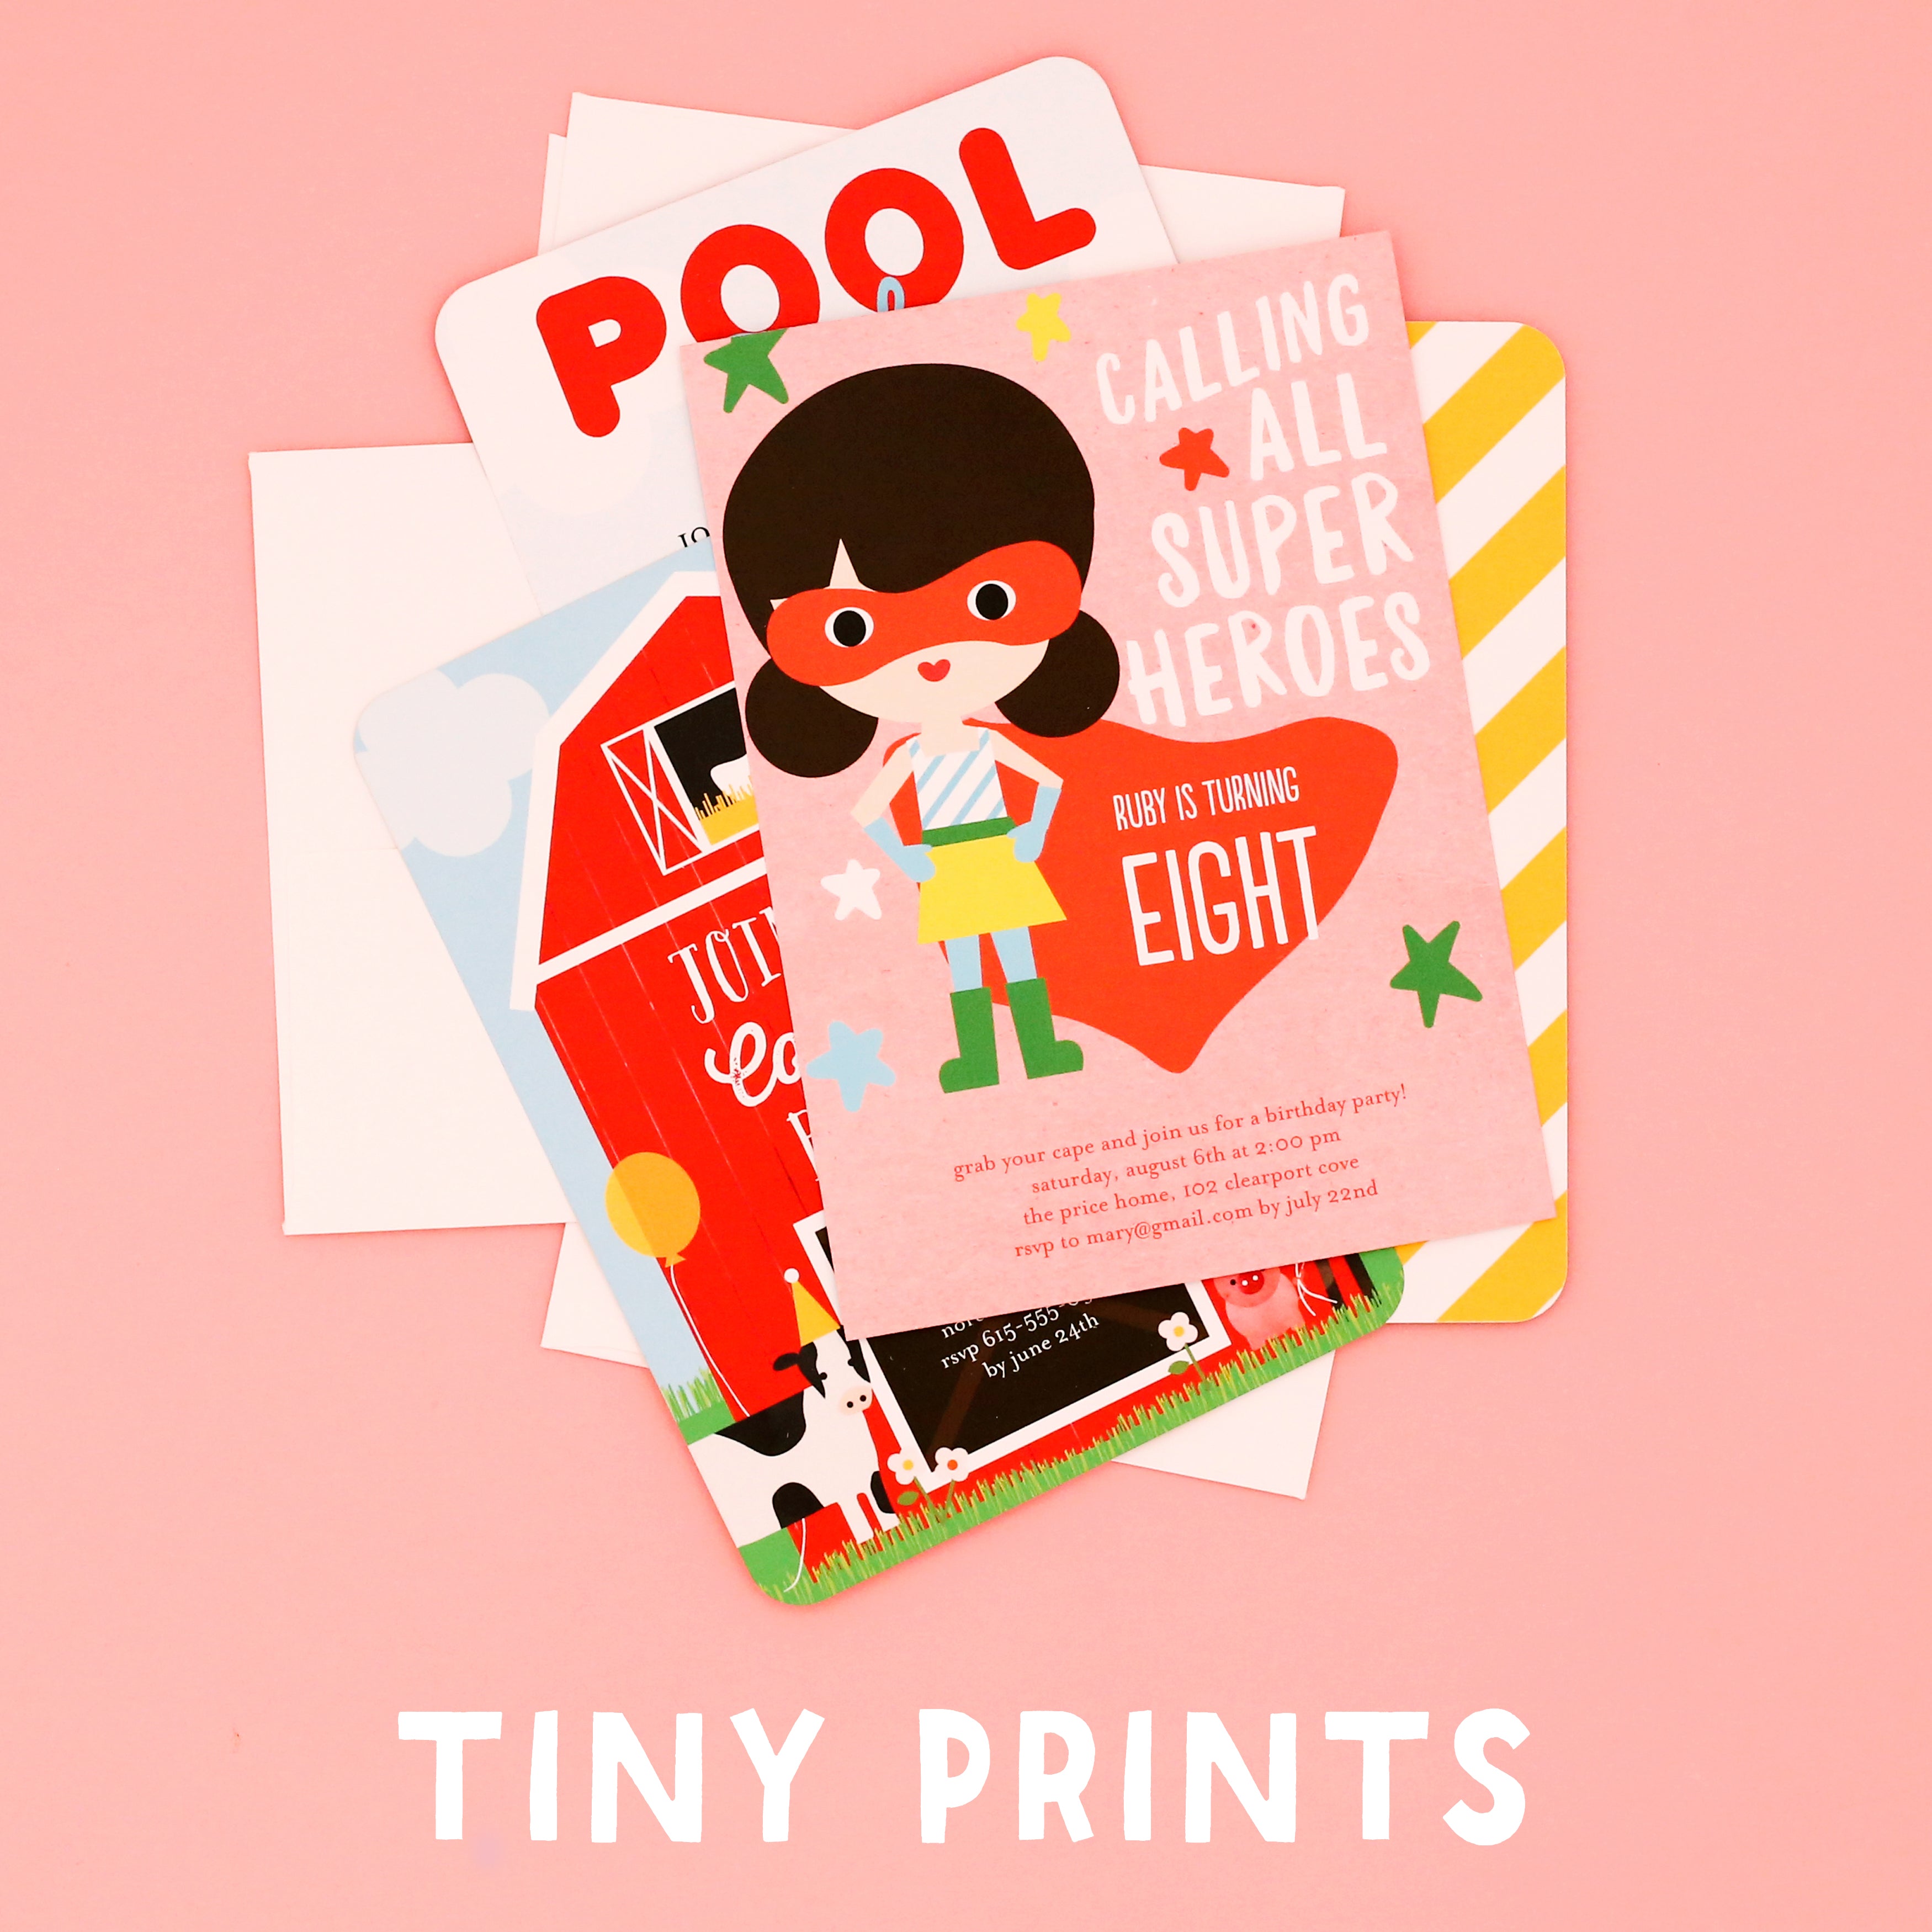 Ann Kelle x Tiny Prints